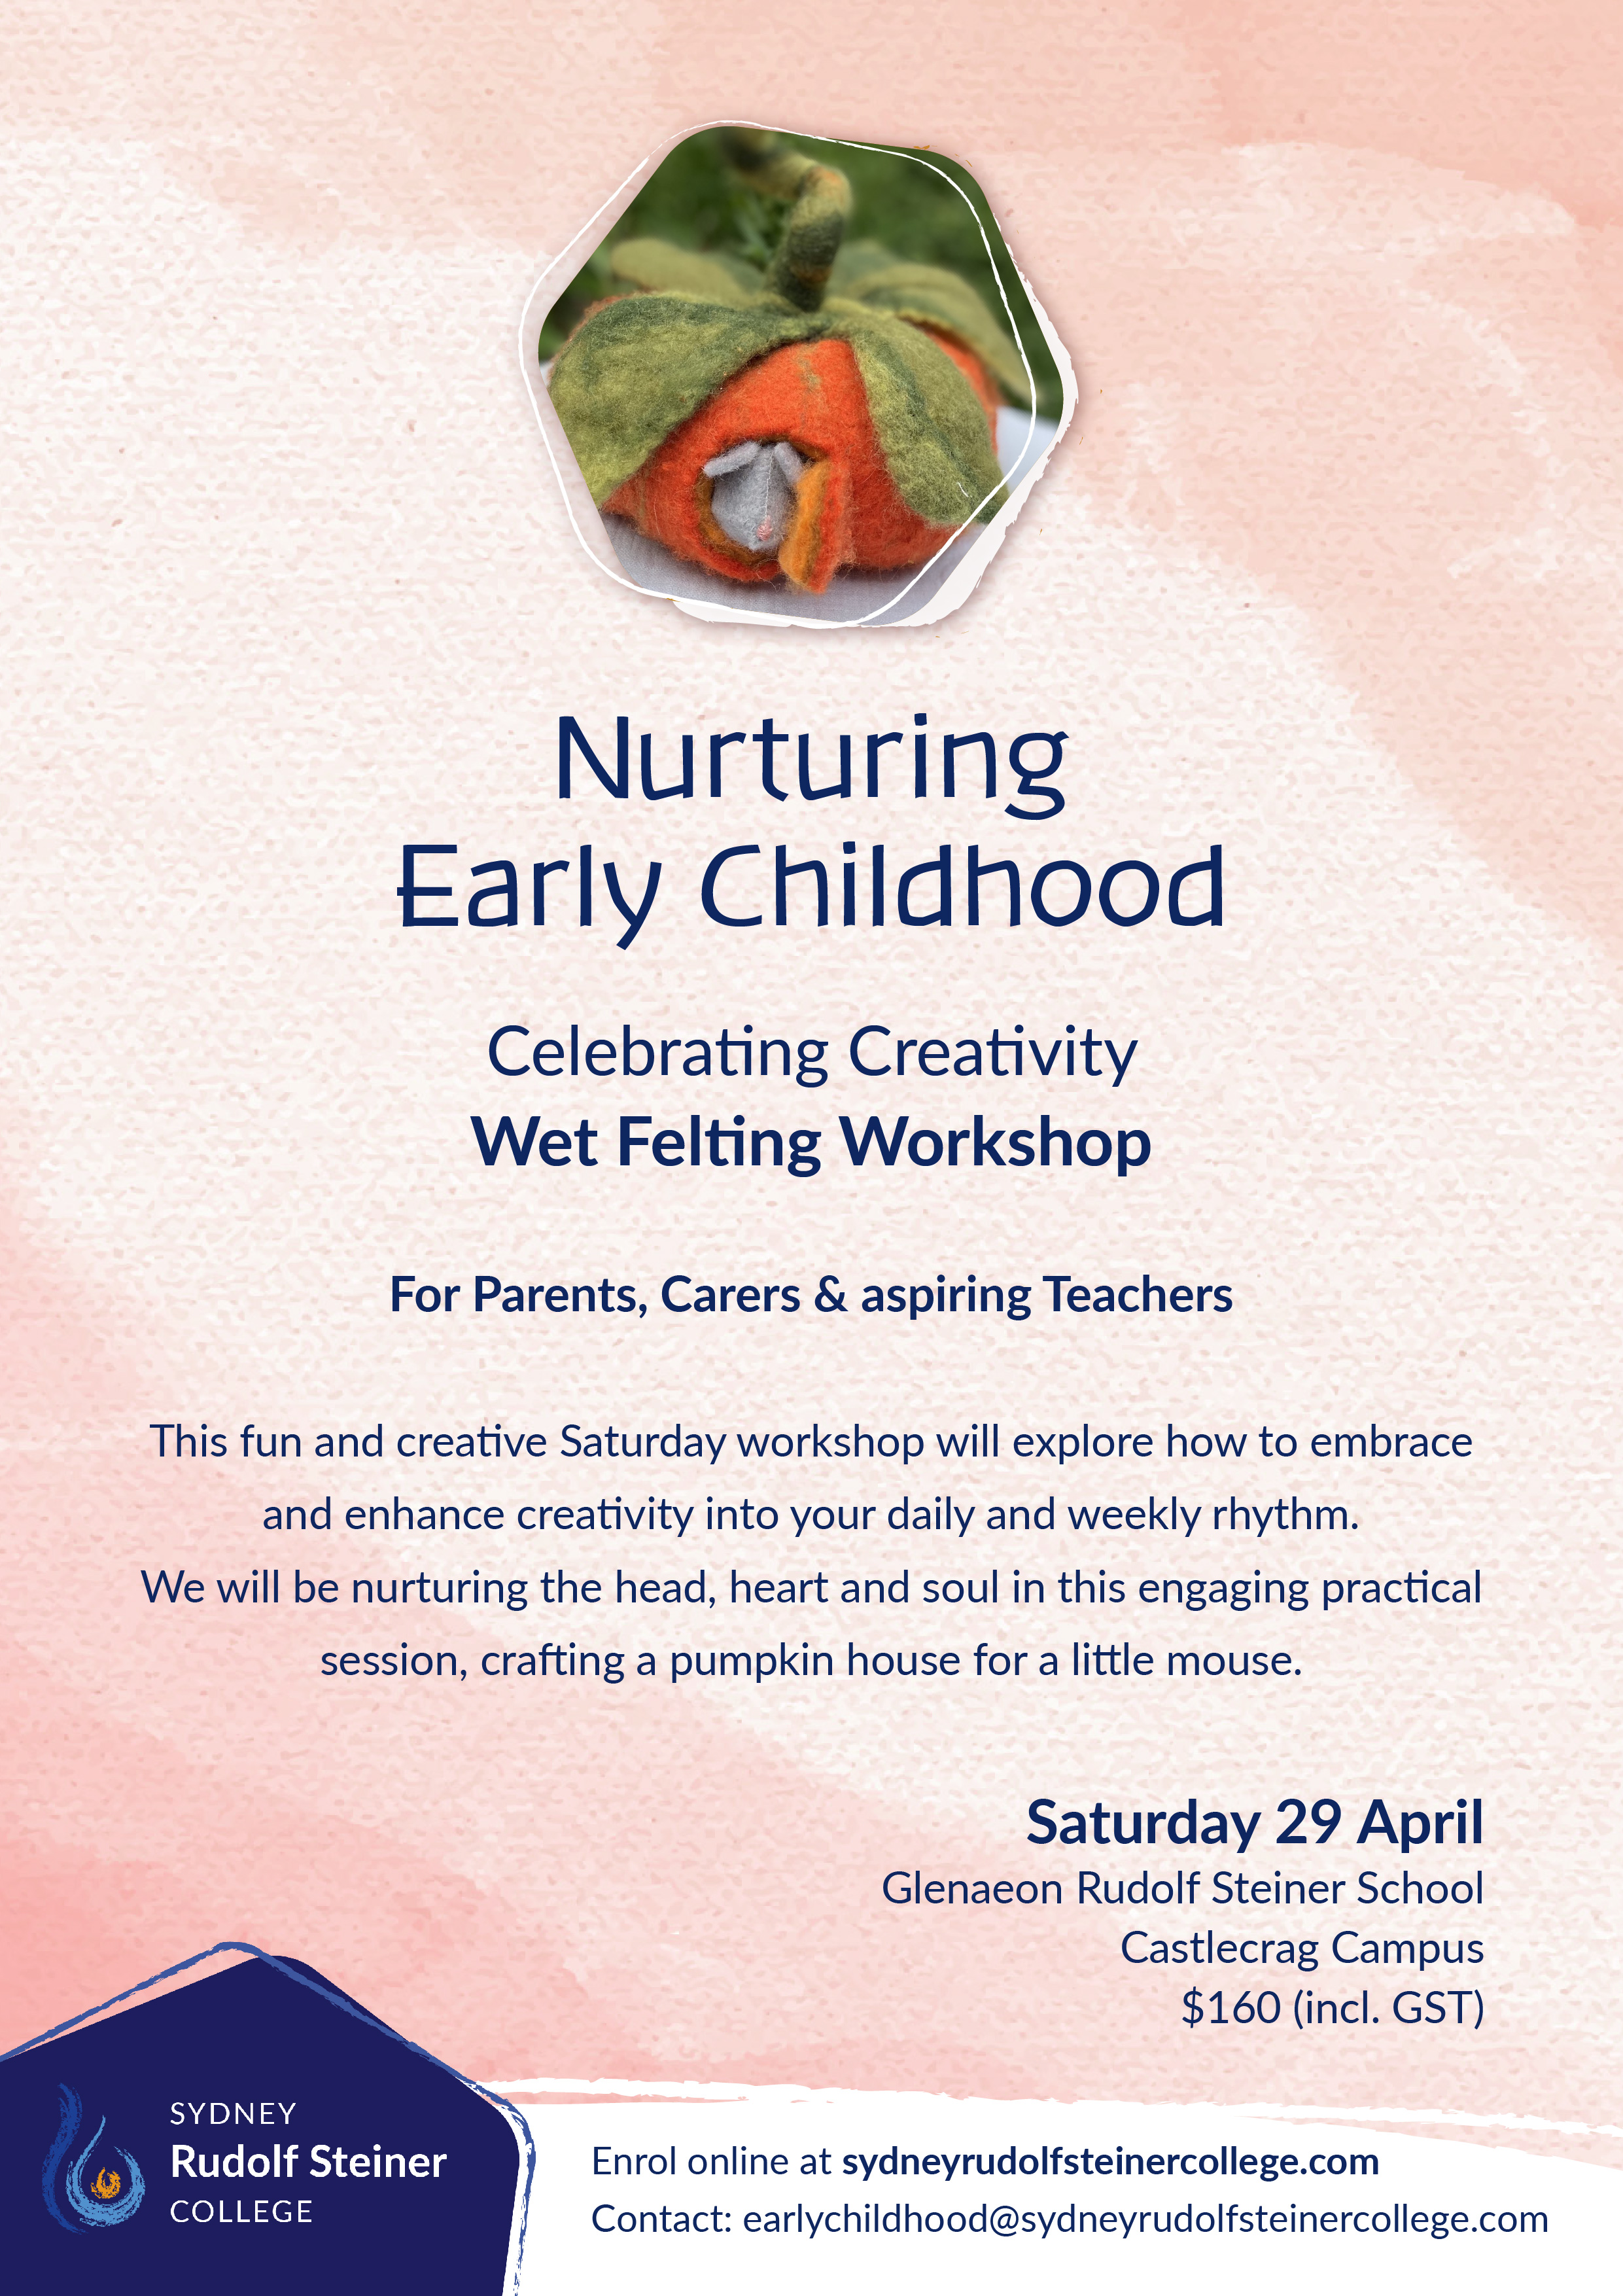 Nurturing Early Childhood felting workshop with Sydney Rudolf Steiner College